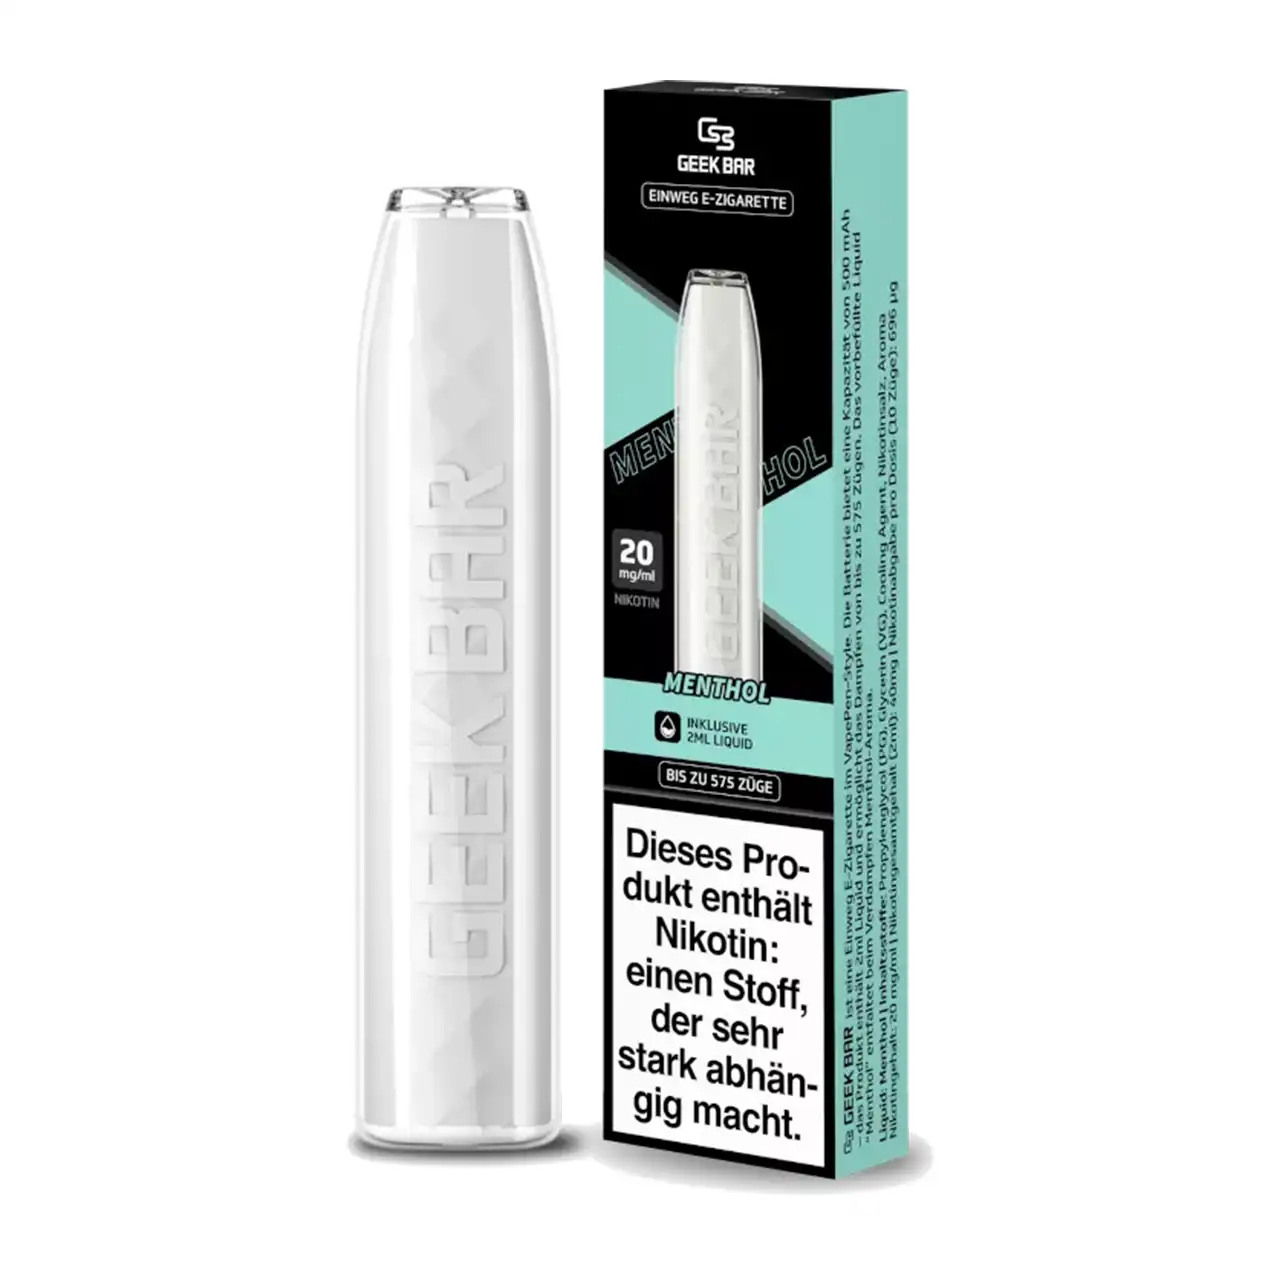 Geek Bar Menthol Einweg E-Zigarette Verpackung